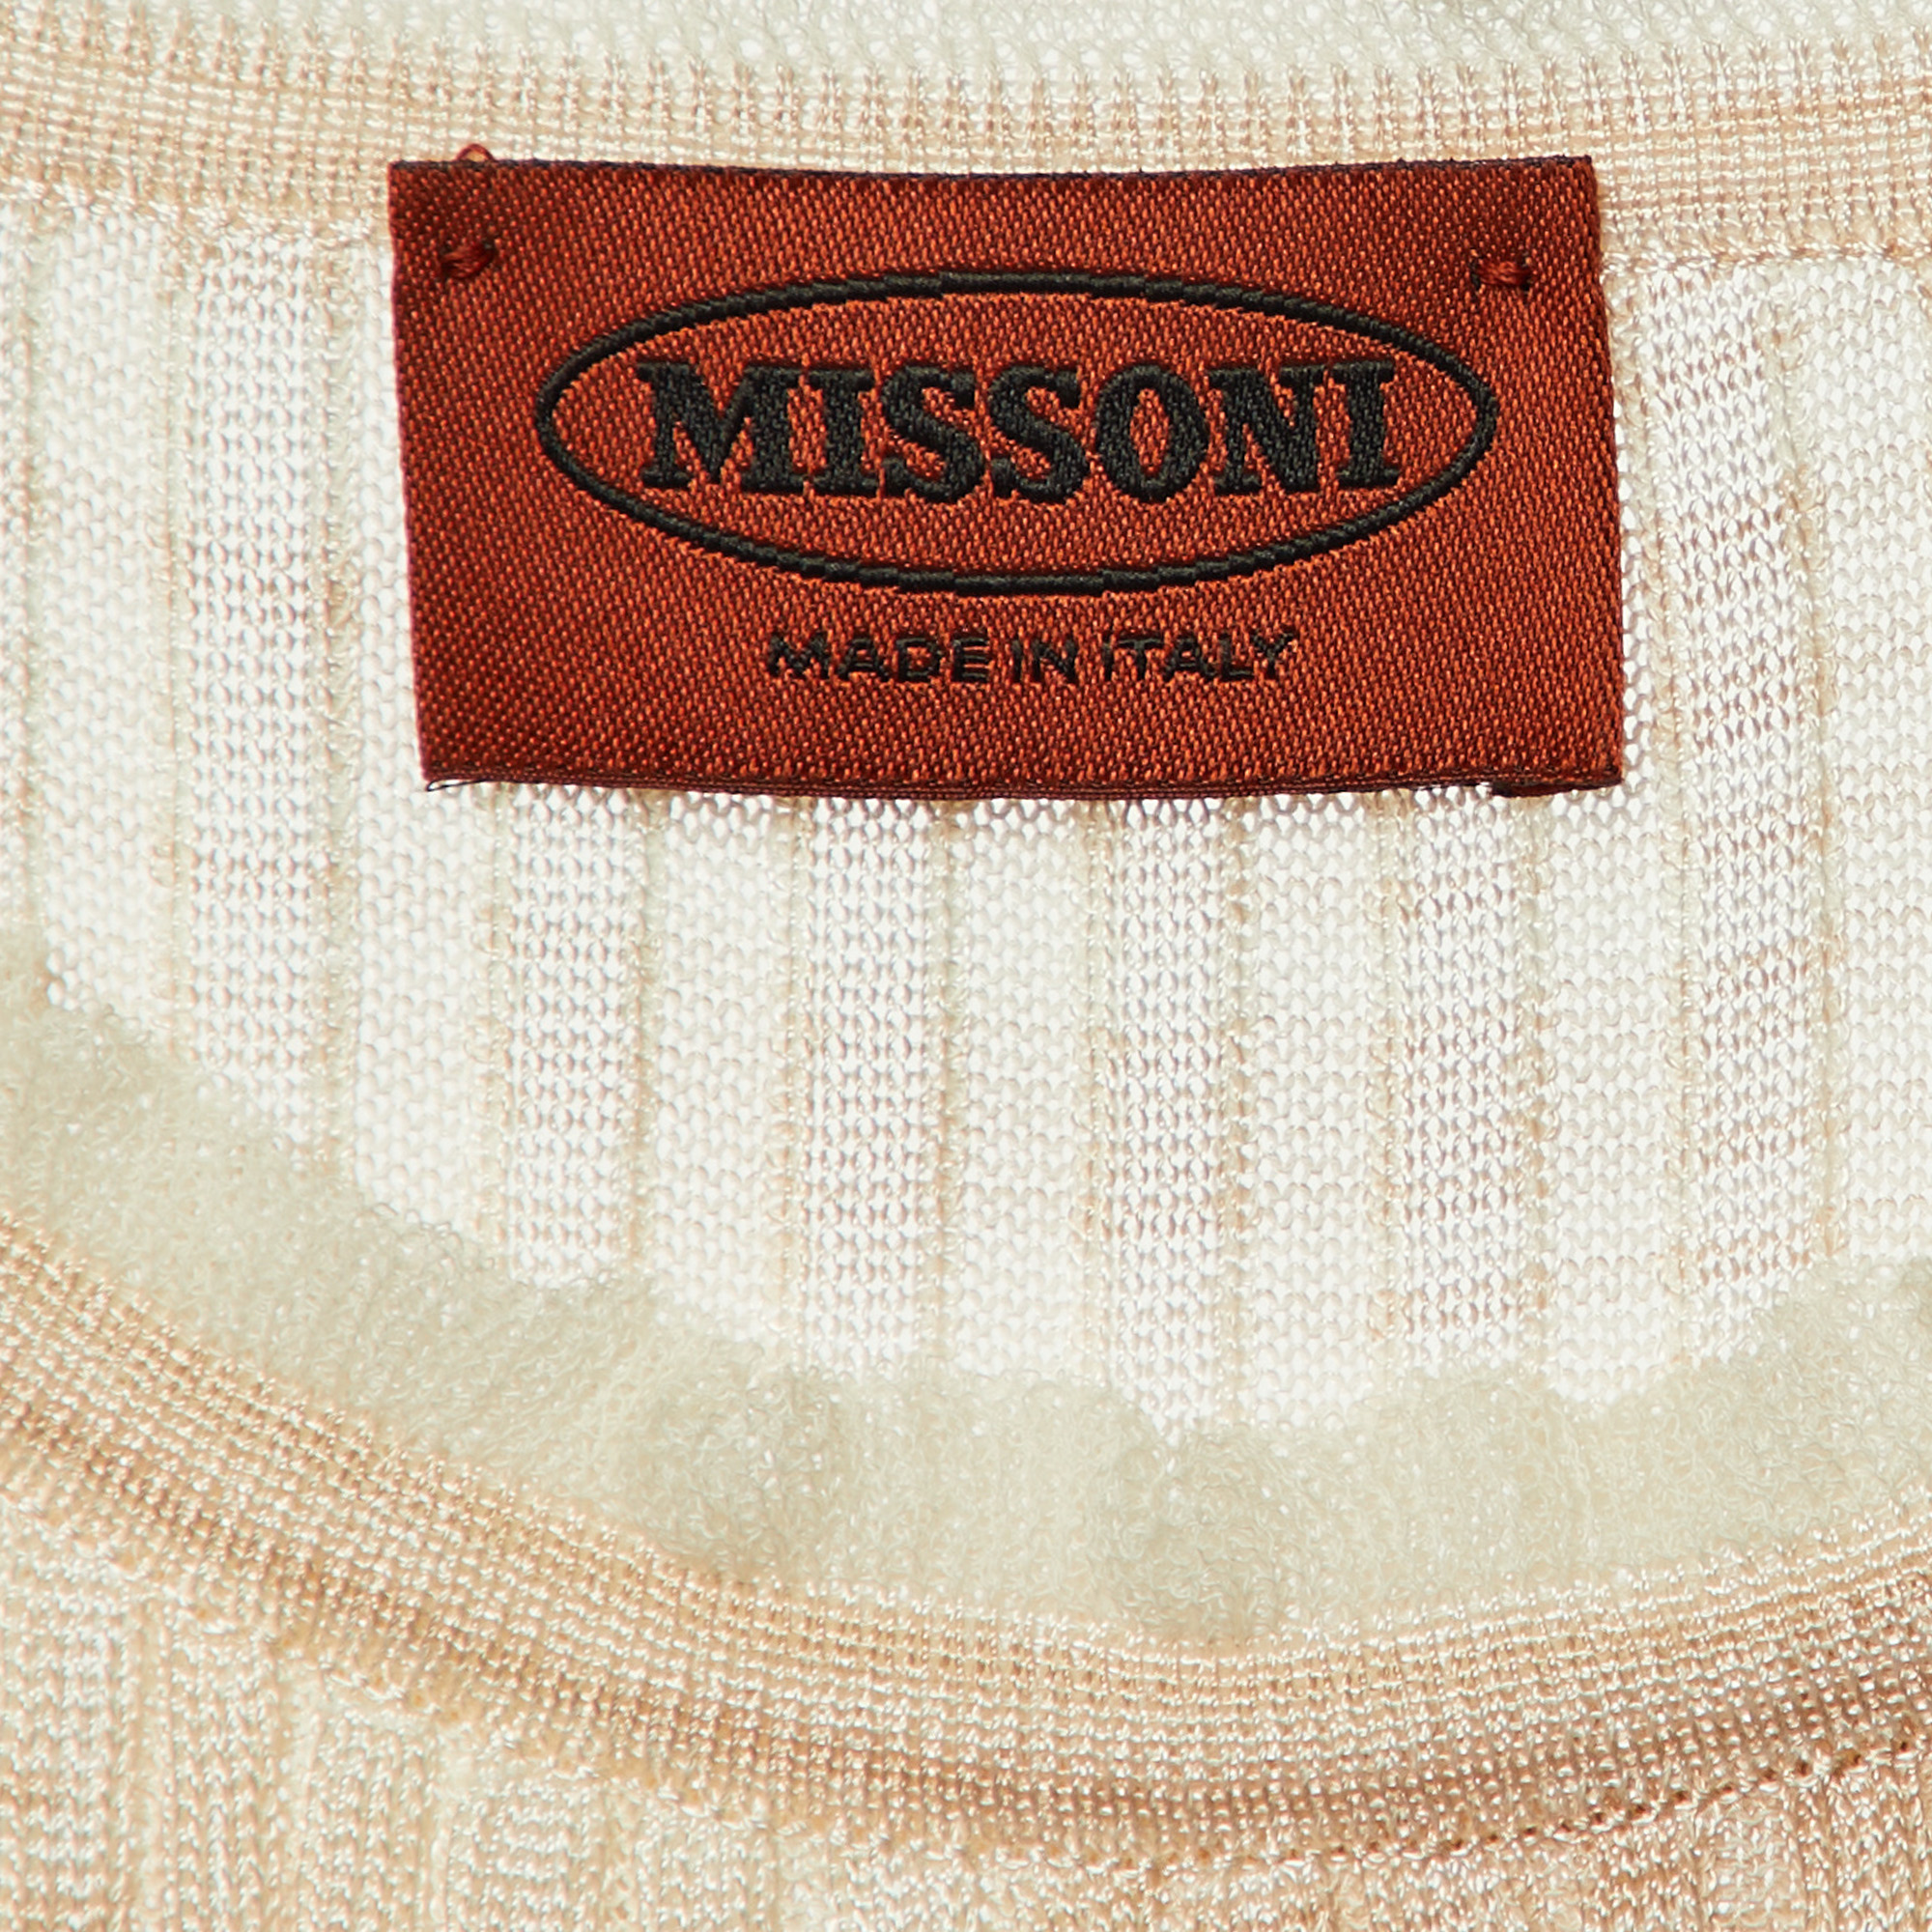 Missoni Cream Patterned Knit Mini Dress S